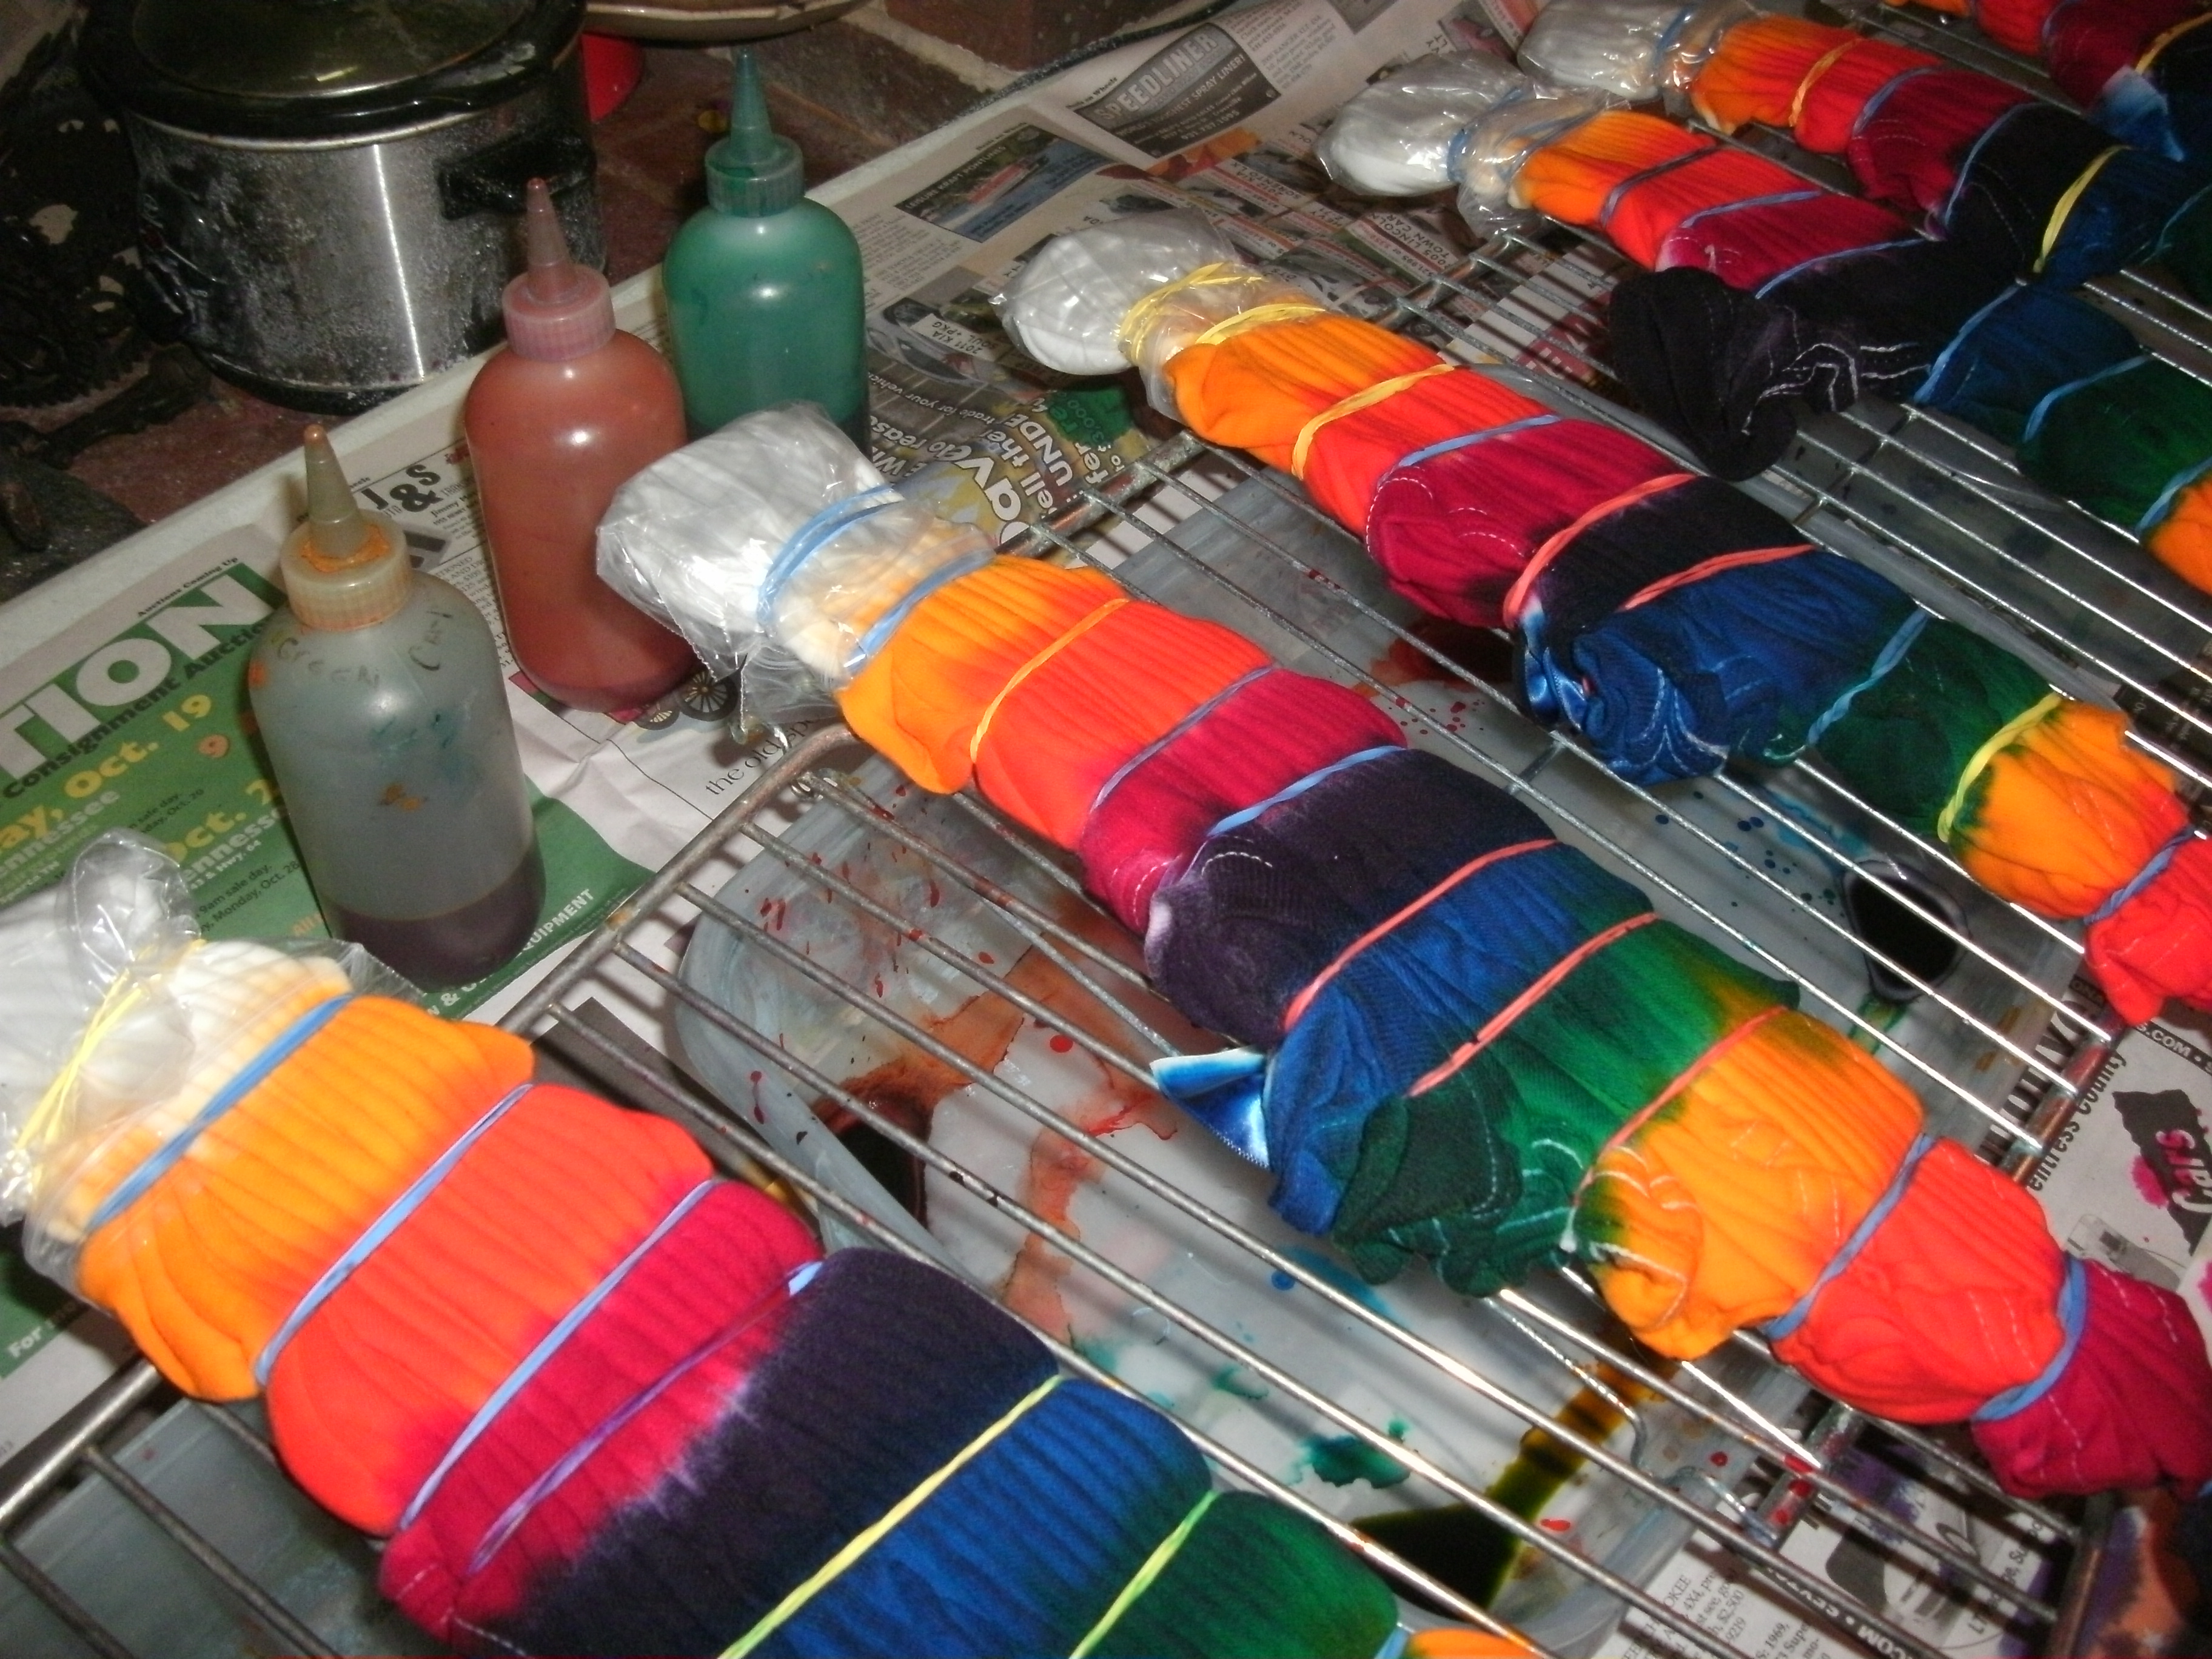 Top 5 Dharma Dye Colors & Binge Dyeing Fiber 